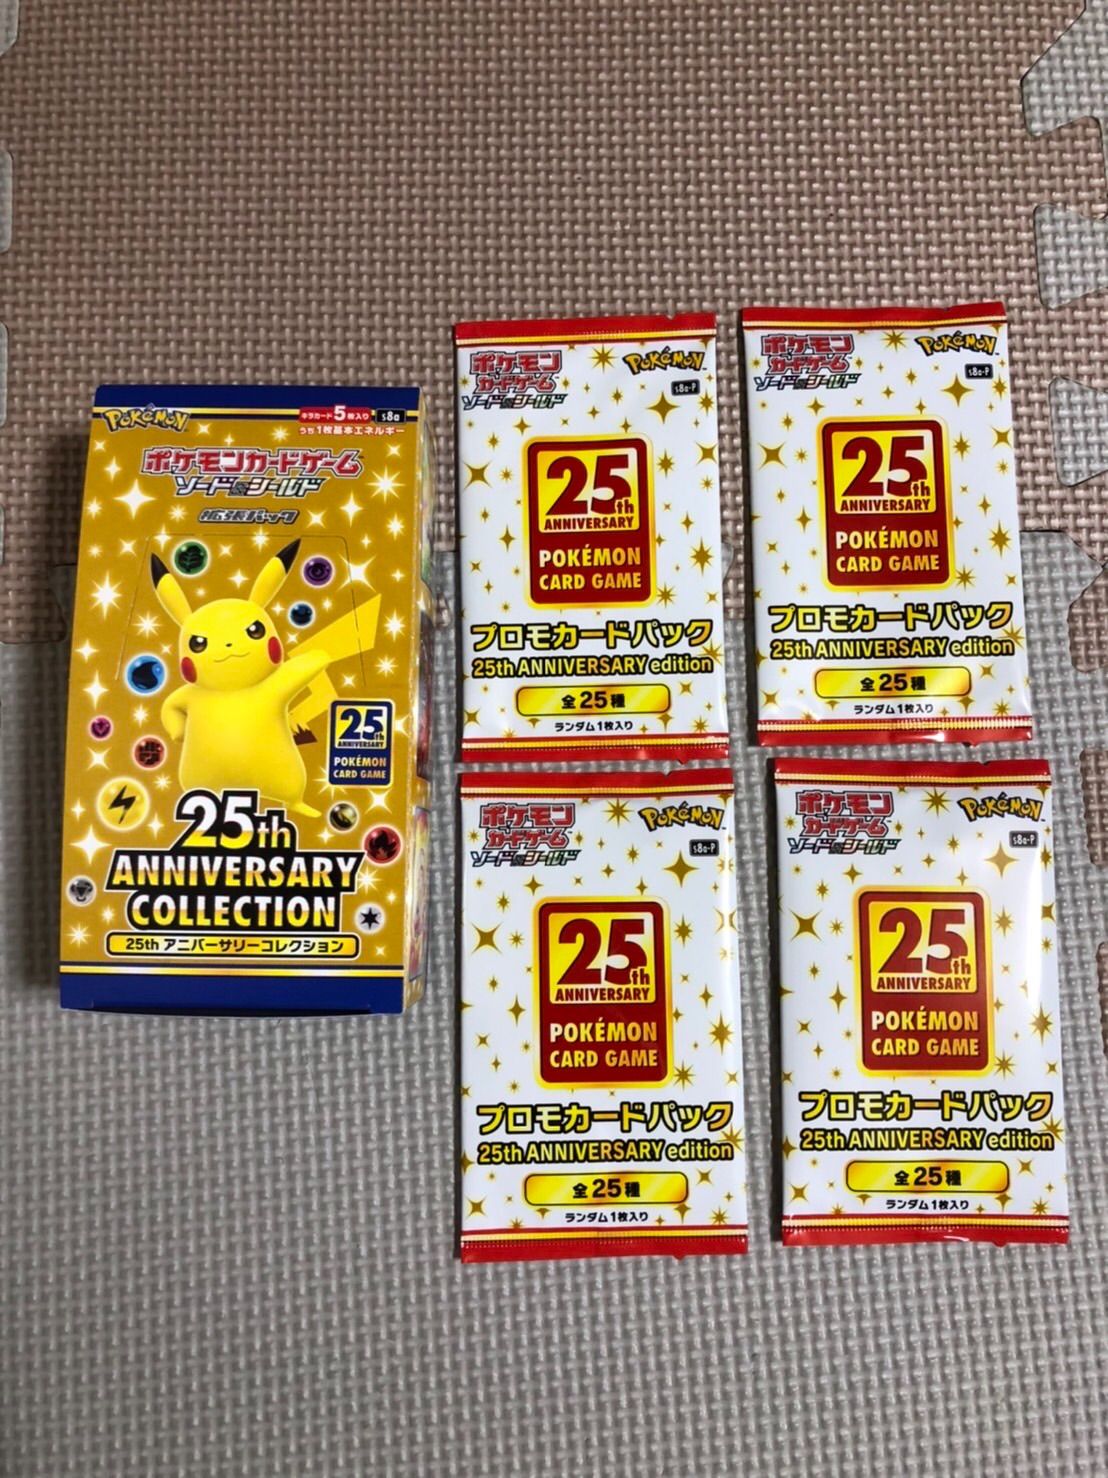 ポケモンカード 25th anniversary box プロモ4パック付き - メルカリ